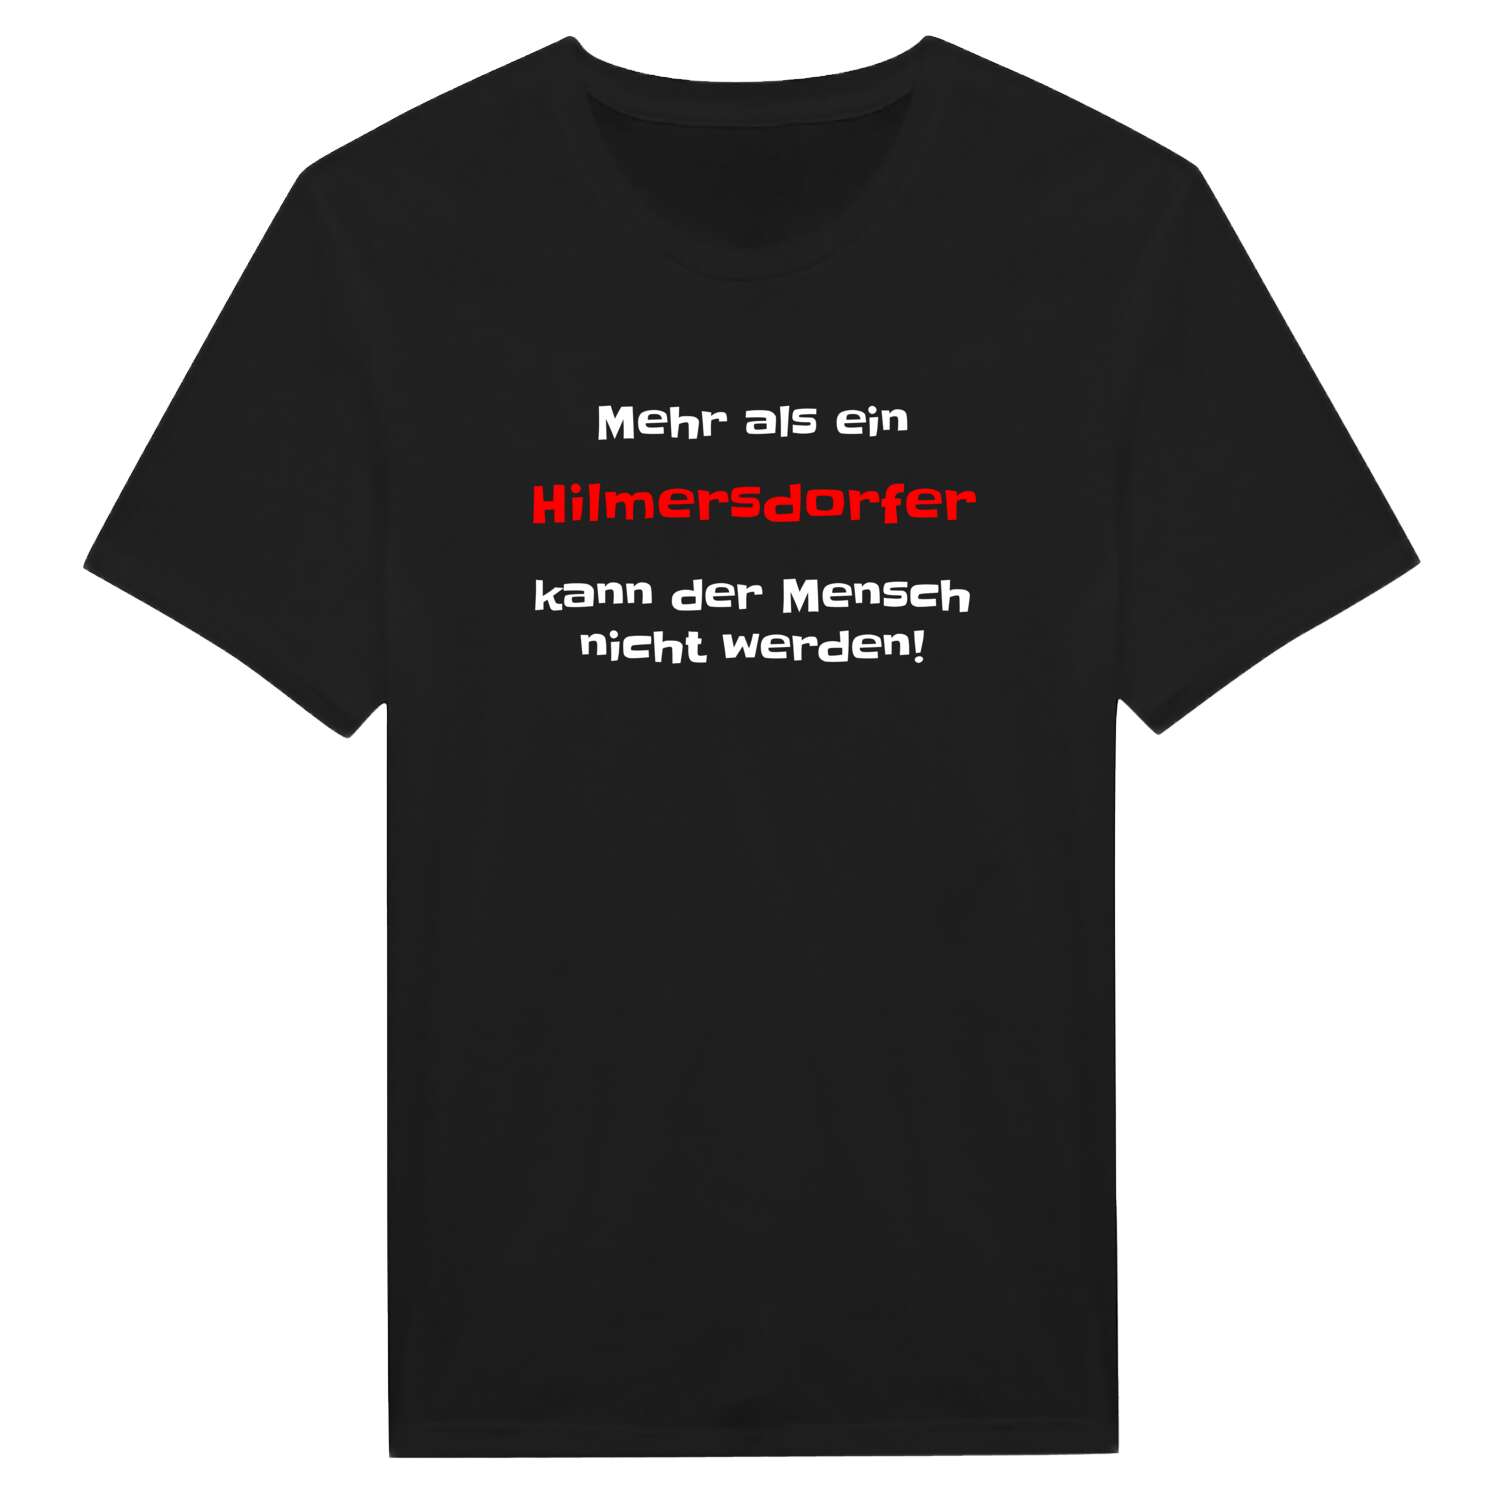 Hilmersdorf T-Shirt »Mehr als ein«